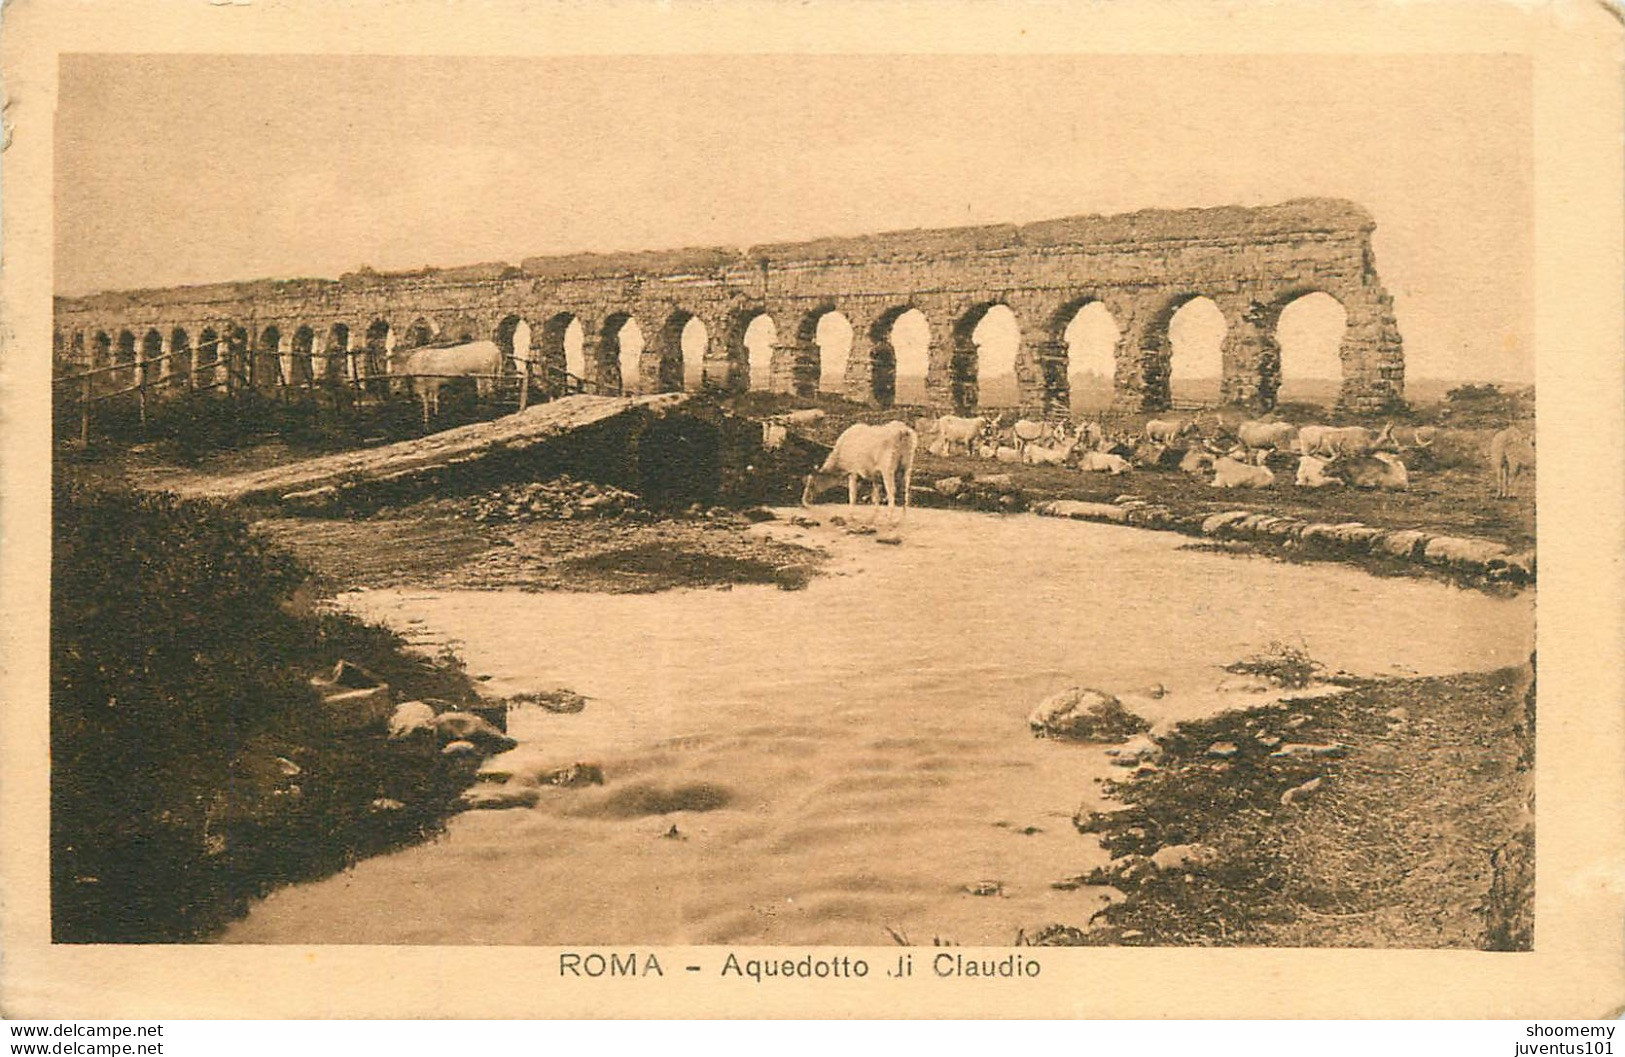 CPA Roma-Aquedotto Di Claudio     L1522 - Andere Monumente & Gebäude